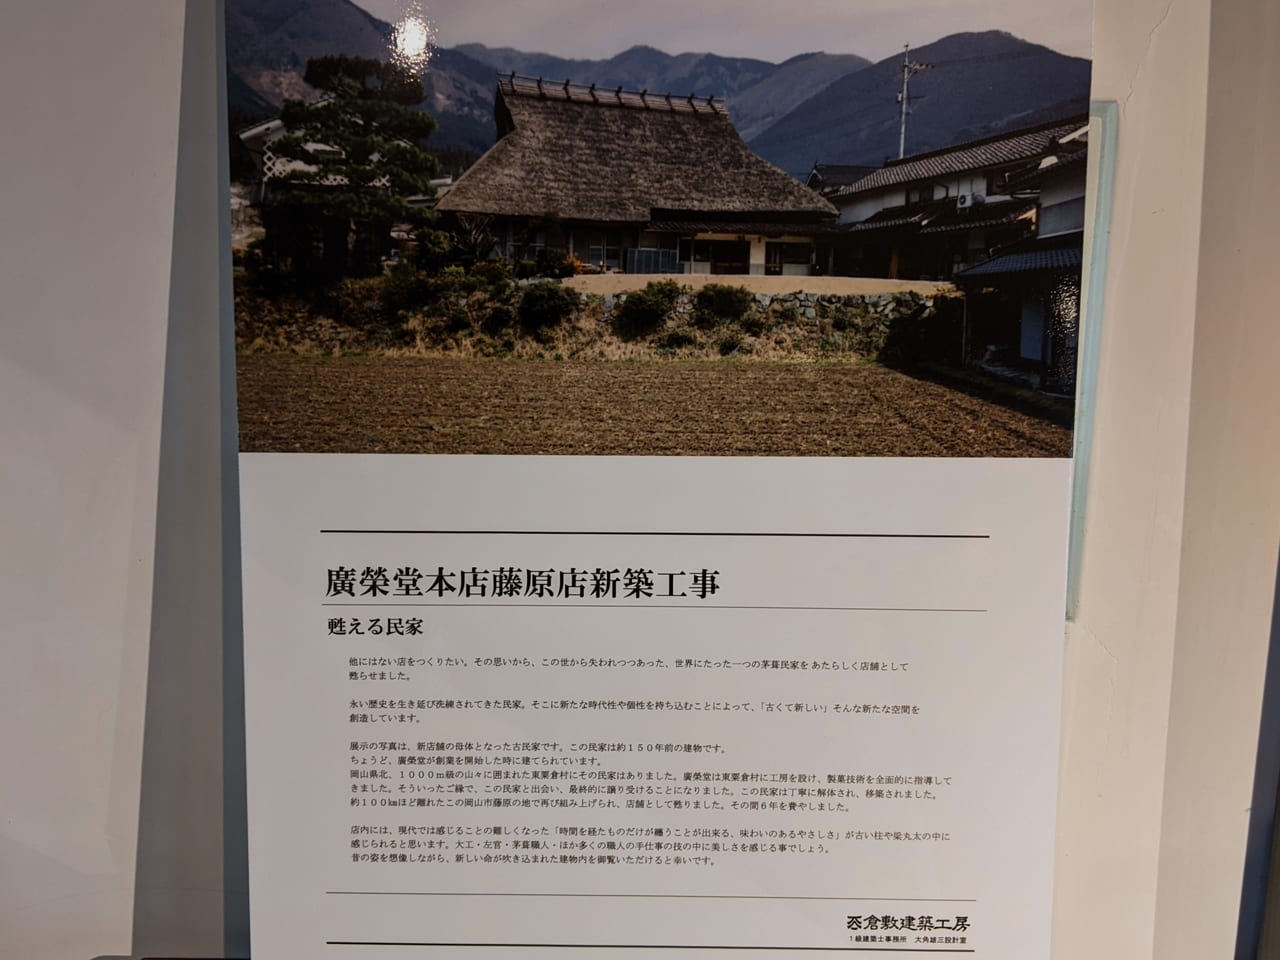 廣榮堂 藤原店の古民家移築の解説